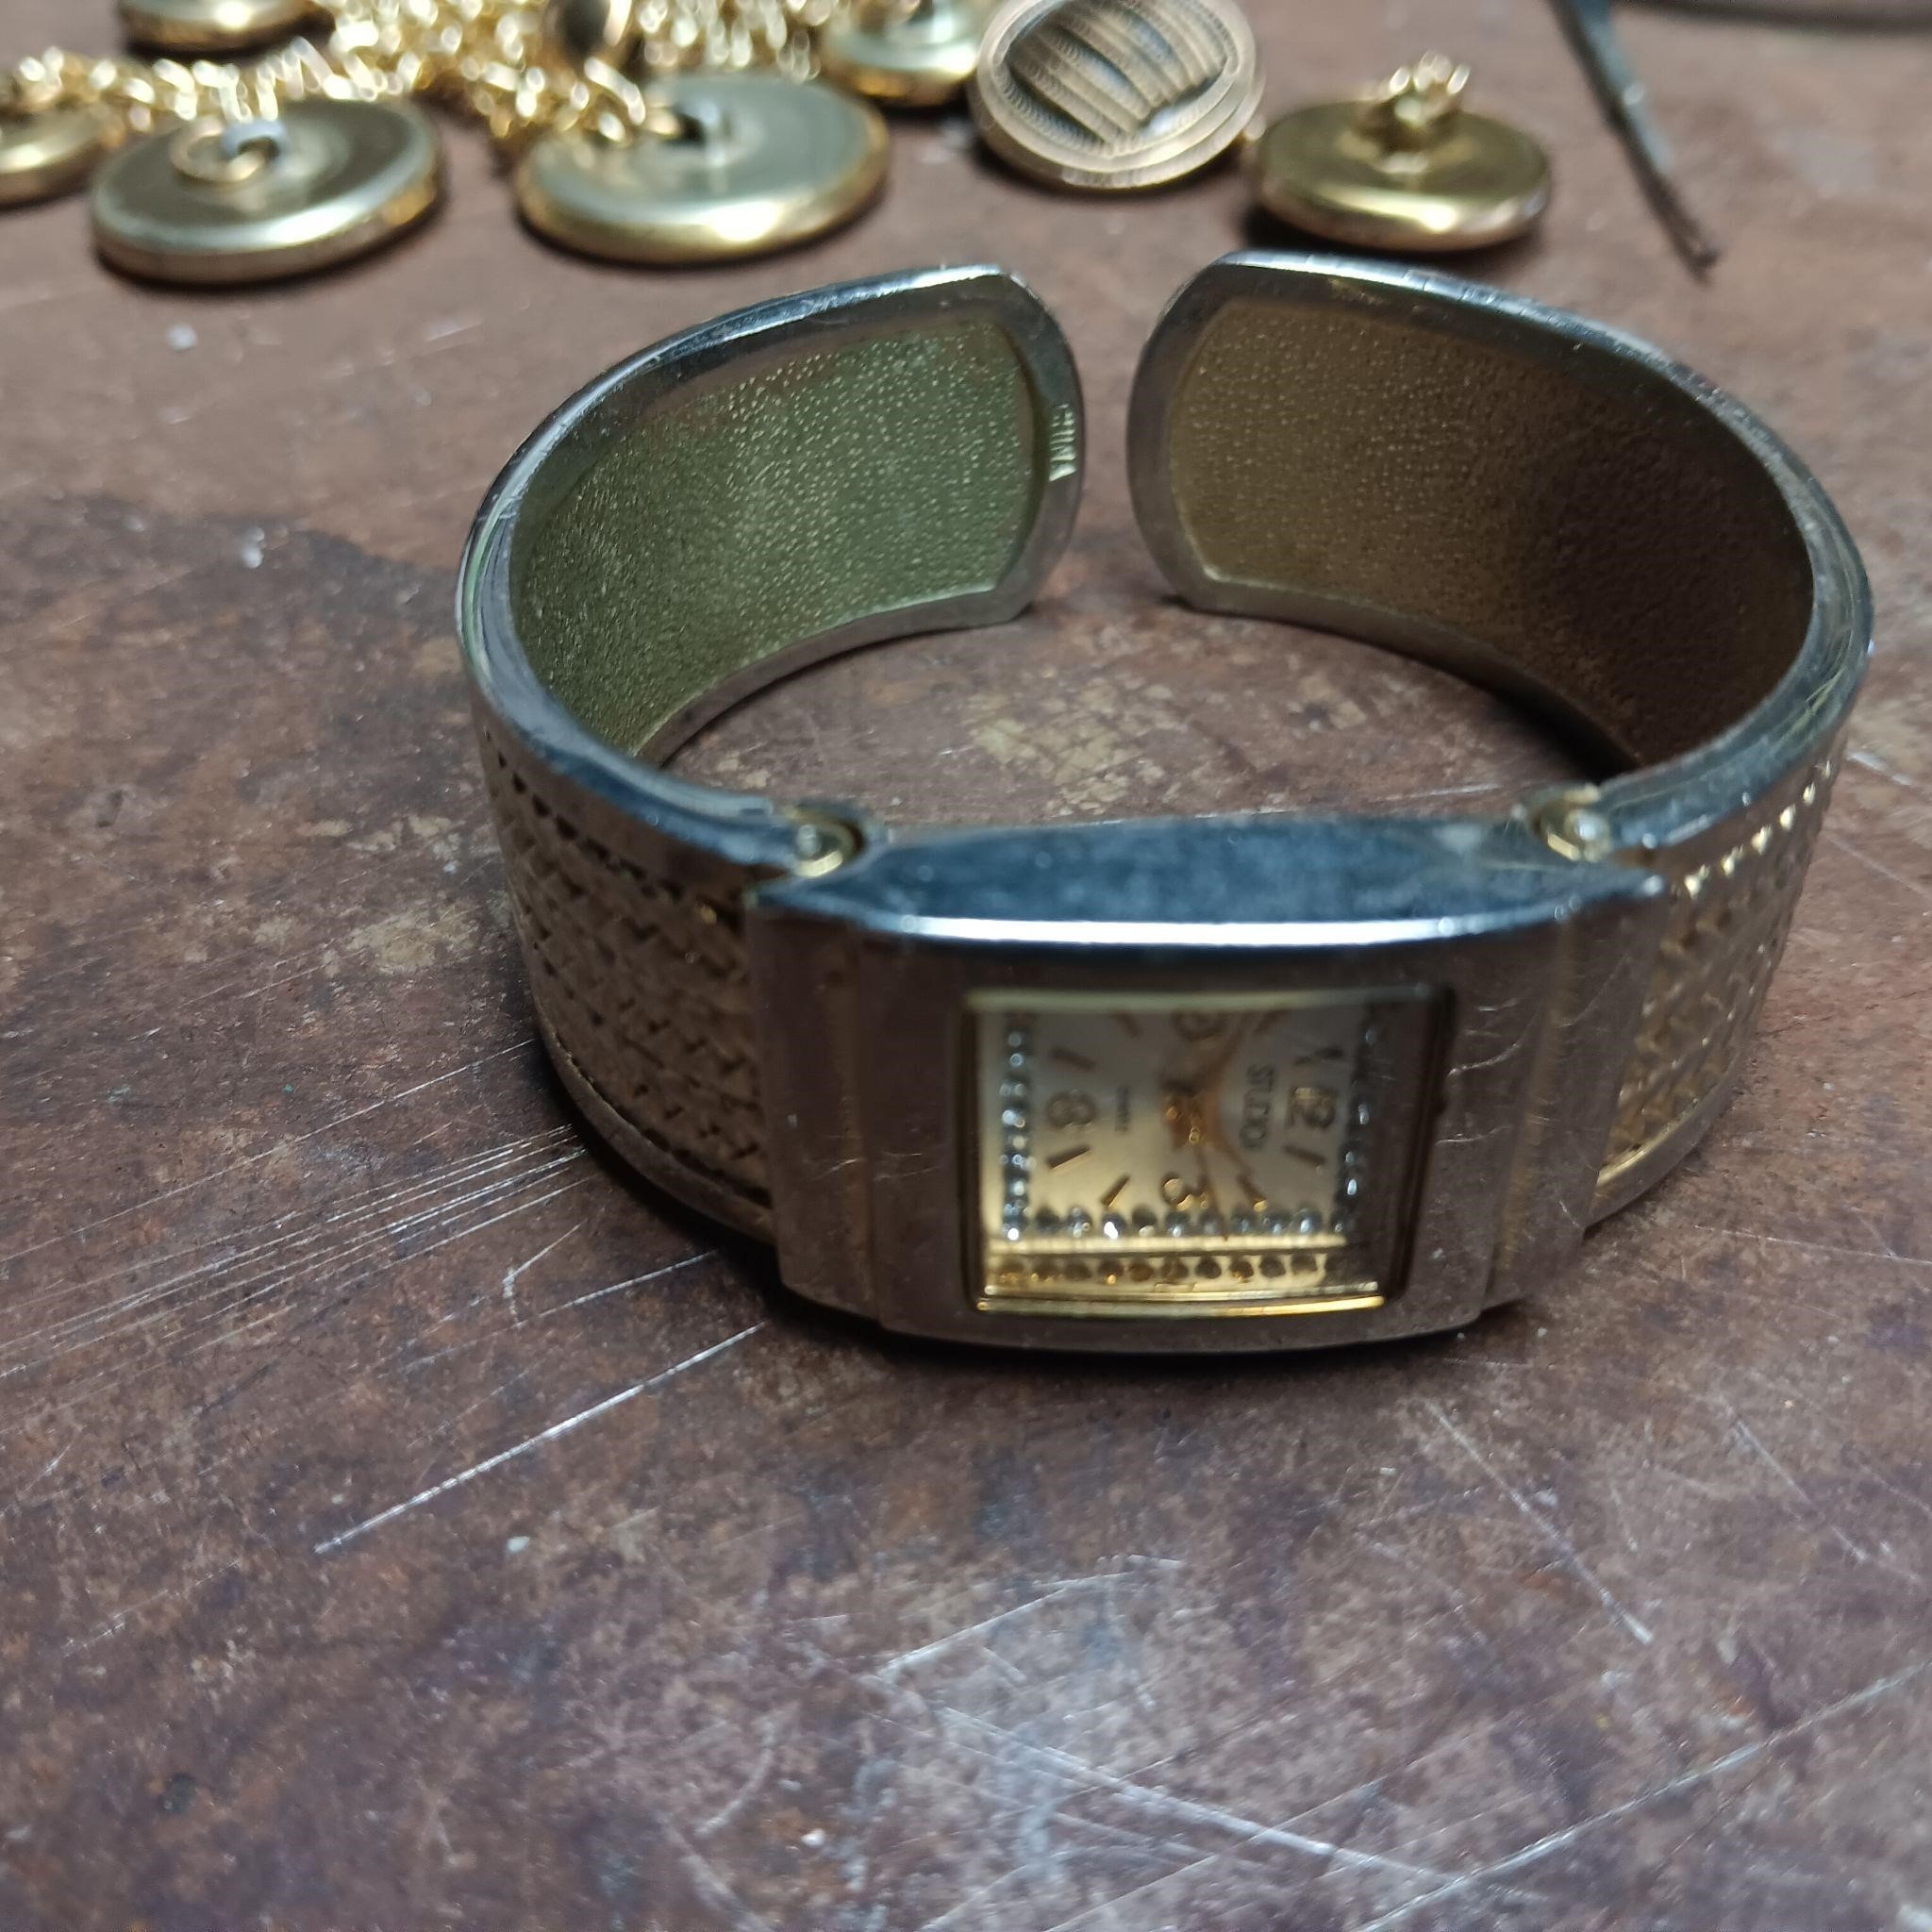 Studioi Bracelet Watch in gold tone